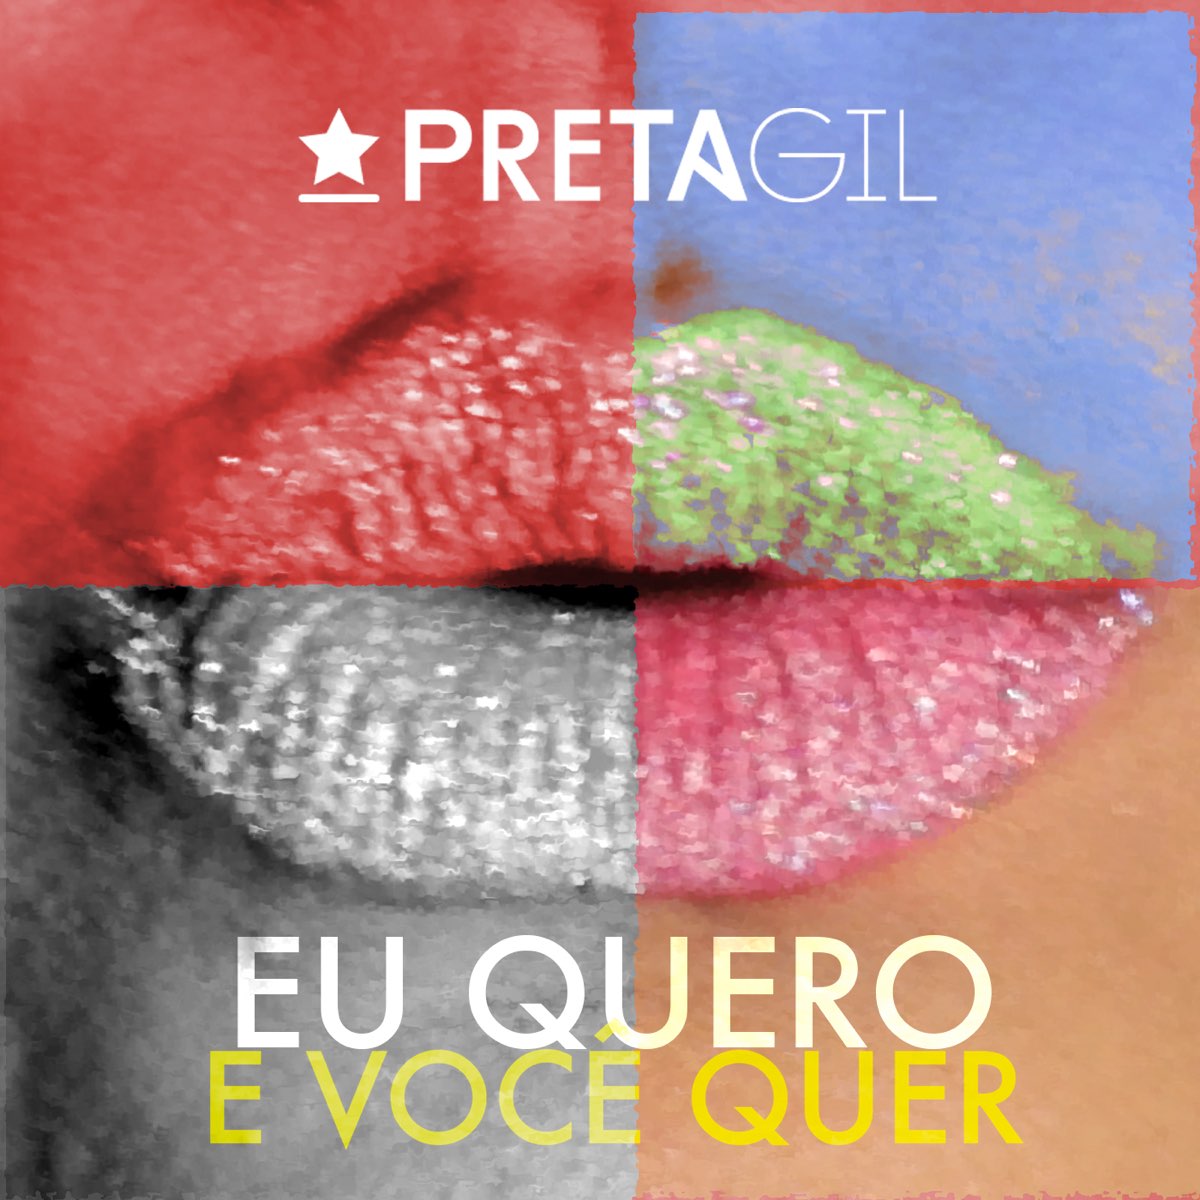 Preta Gil Eu Quero e Você Quer - Single cover artwork